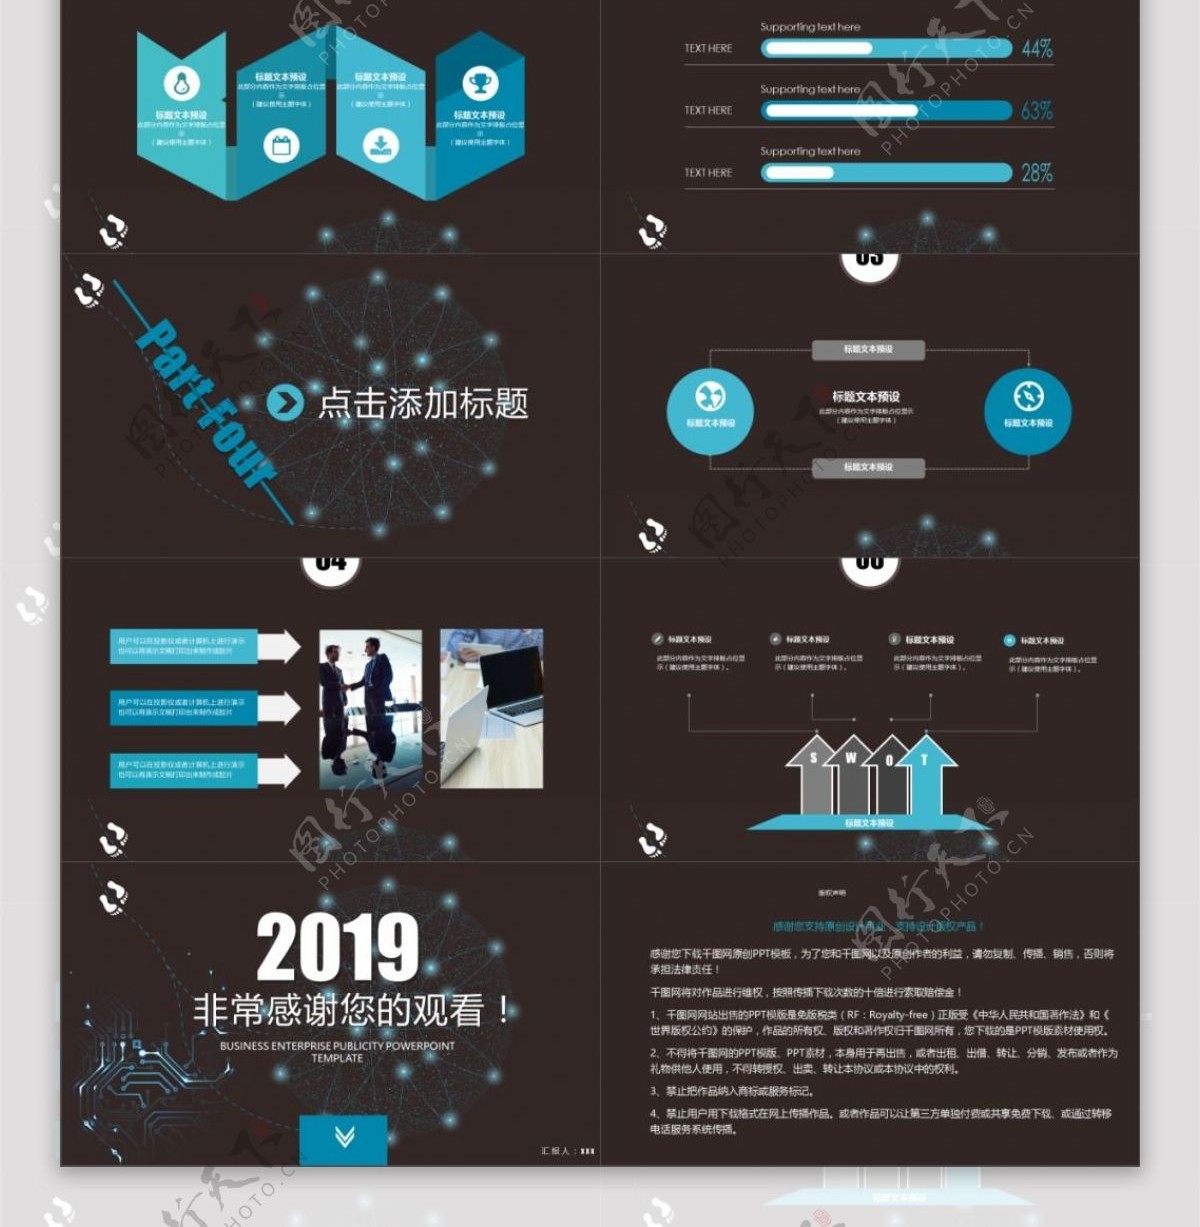 2019蓝色科技企业宣传PPT模板